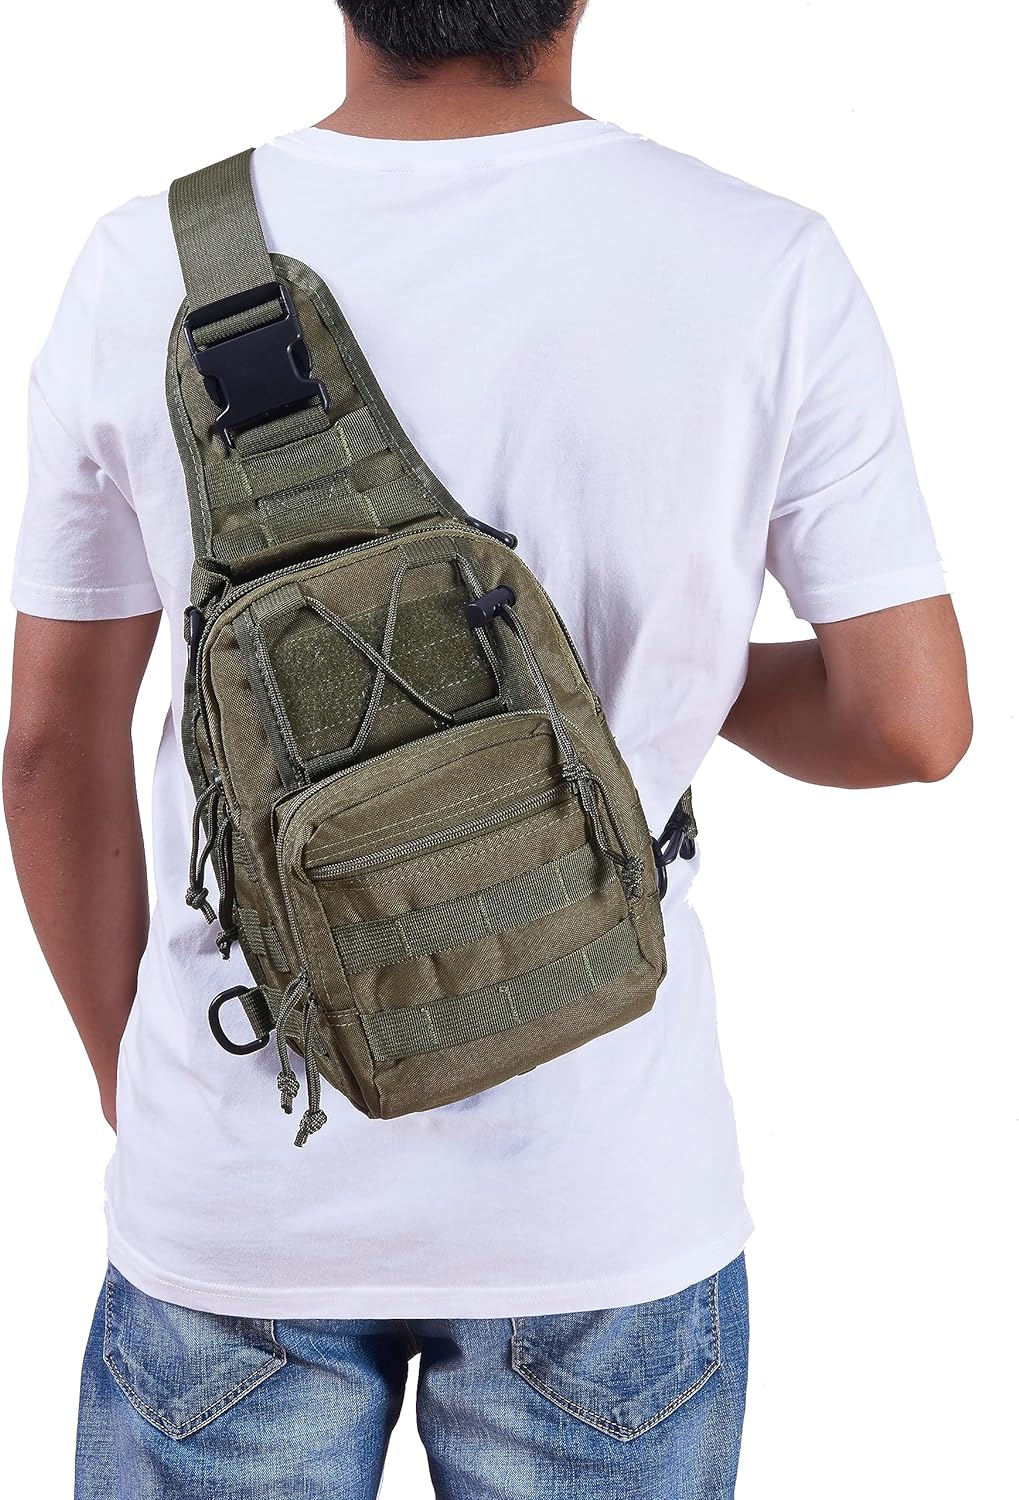 Military Sport Bag Pack Sling Shoulder Backpack Tactical Satchel